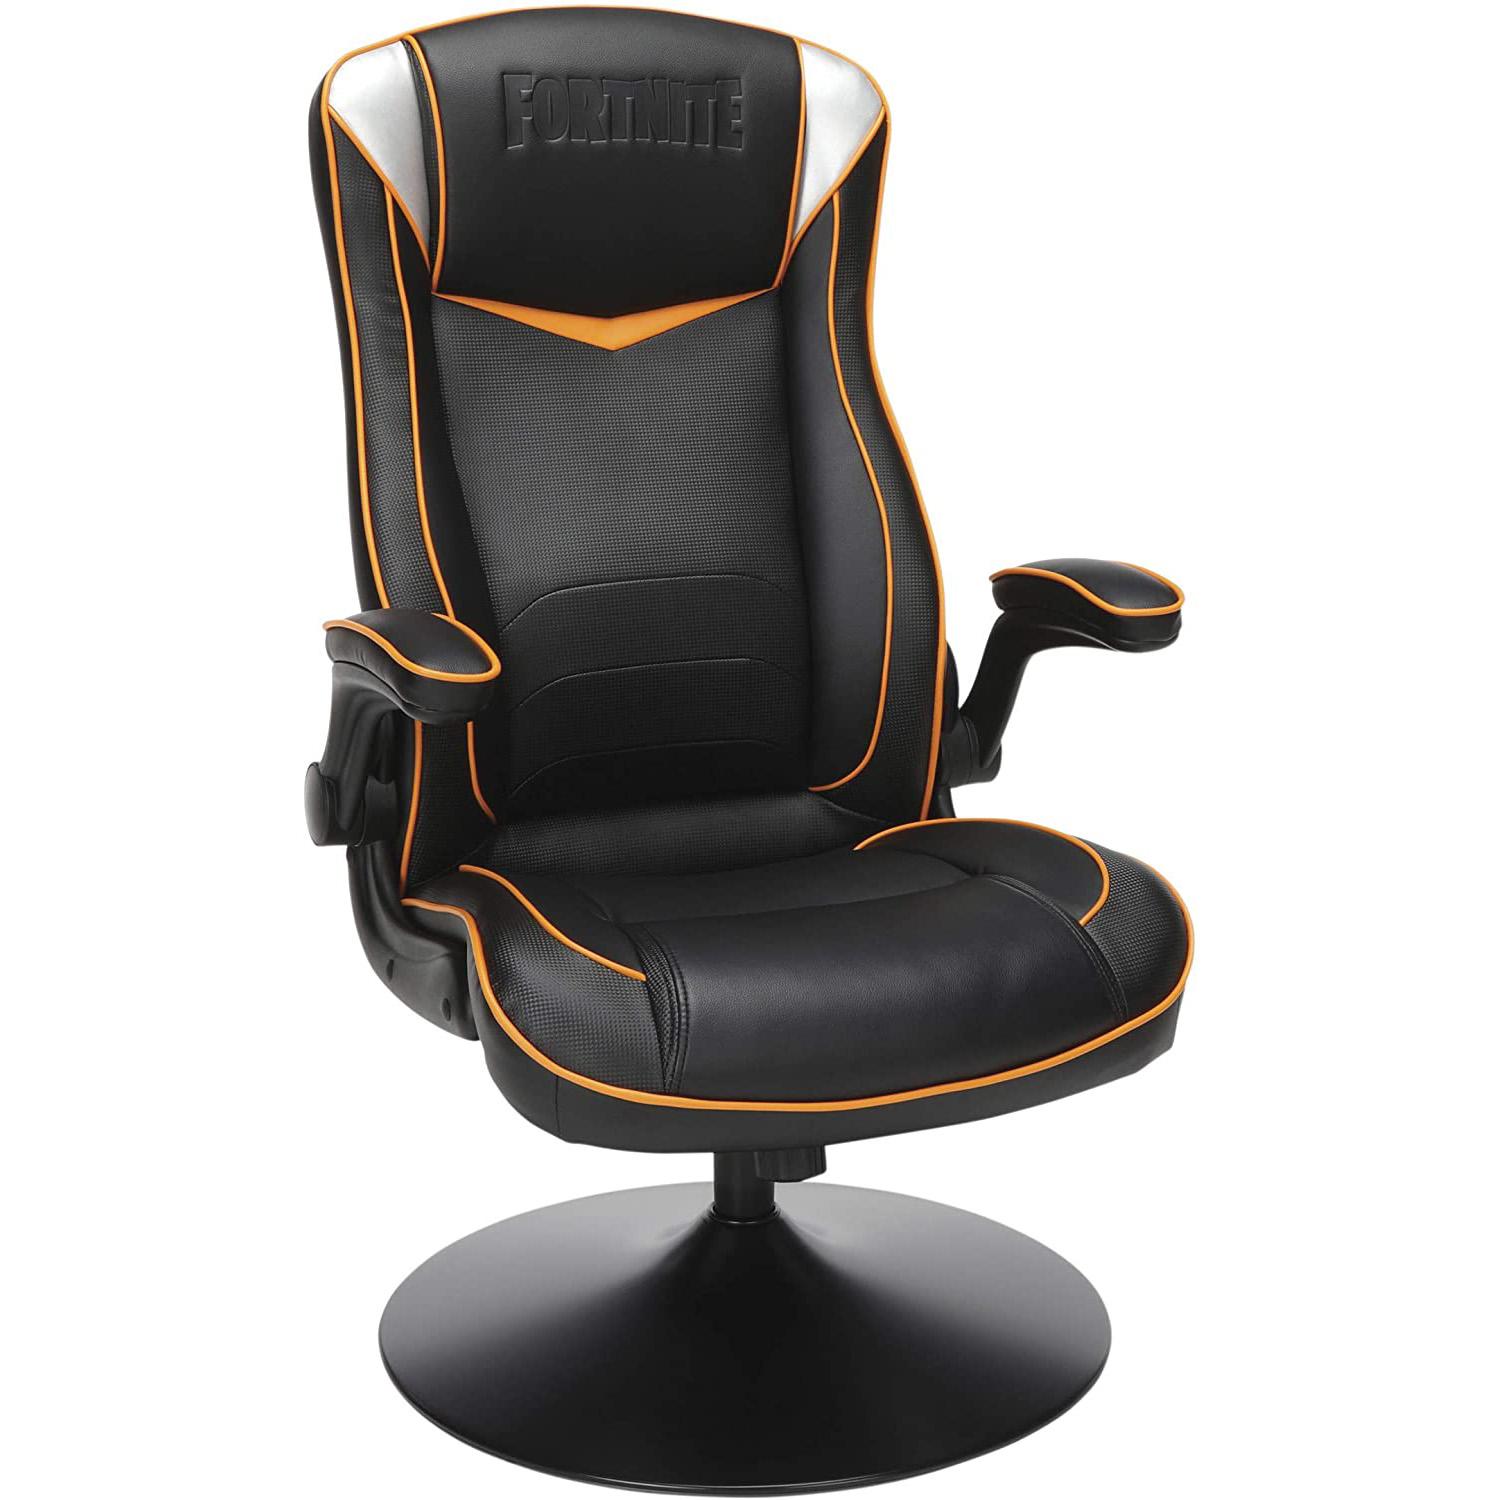 Respawn Omega-R GamFortnite ing Rocker Rocking Gaming Chair for $88.51 Shipped